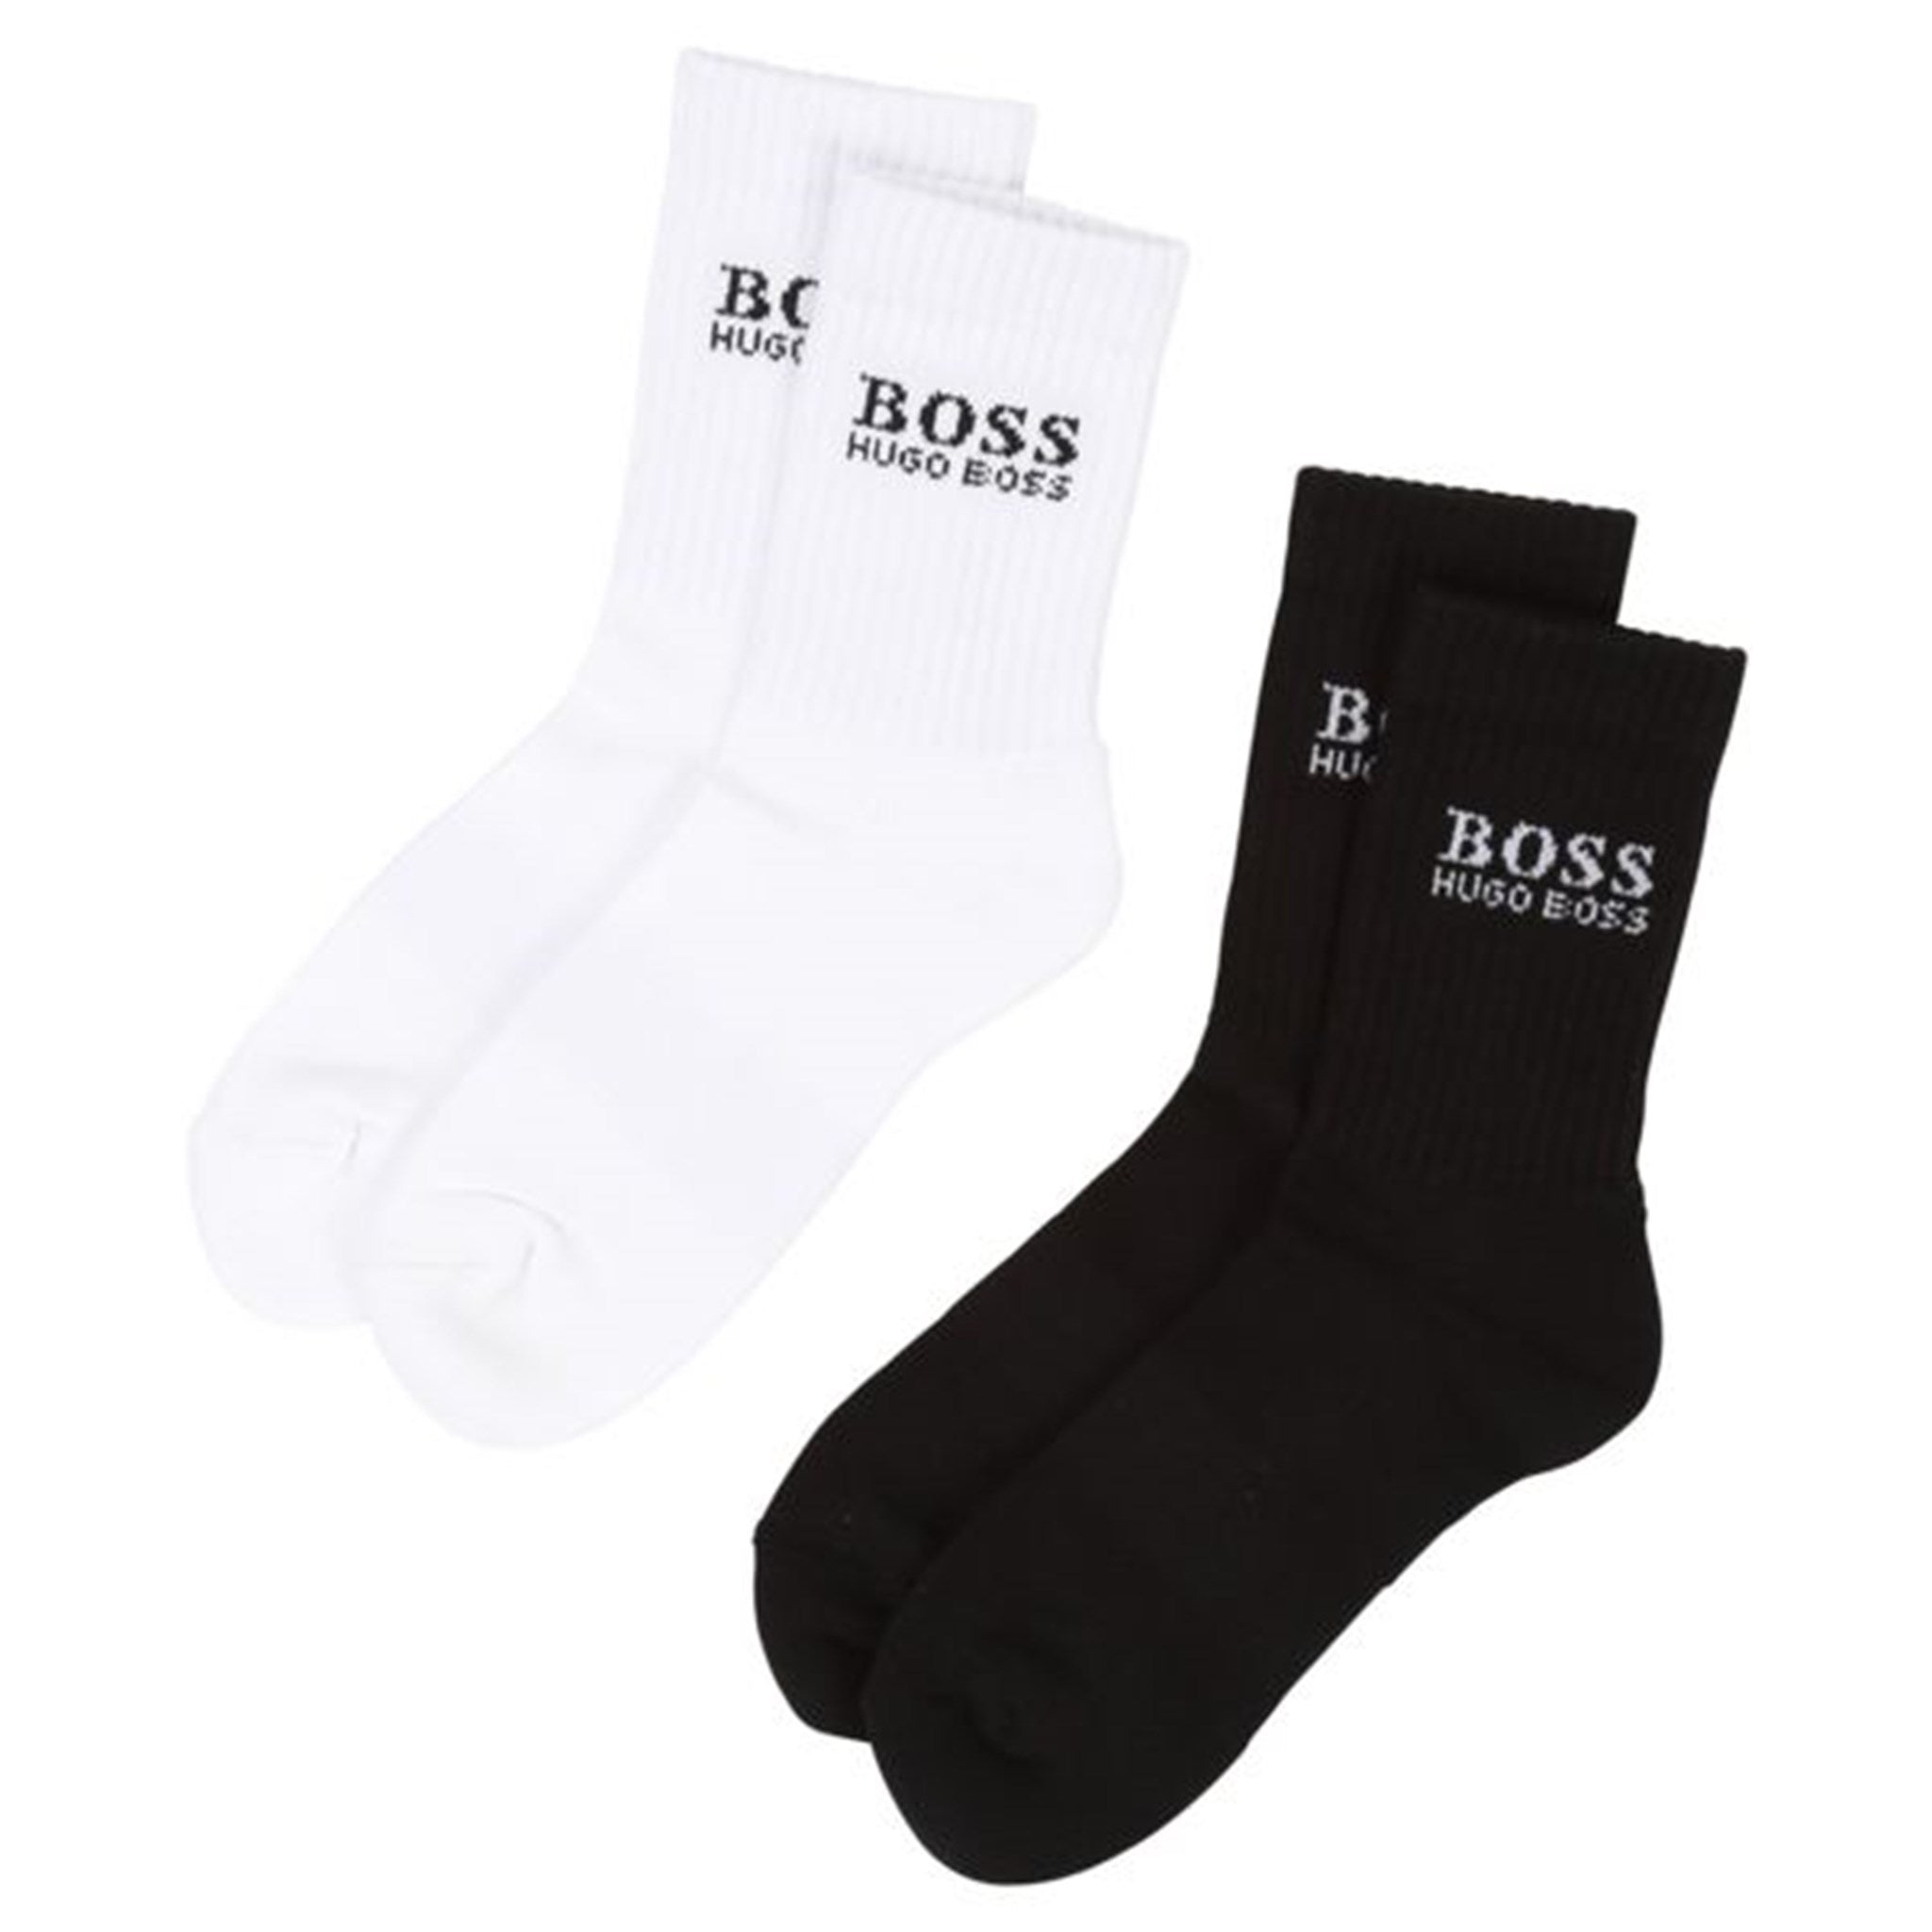 Hugo Boss Socks Black/White - Str. 37/38